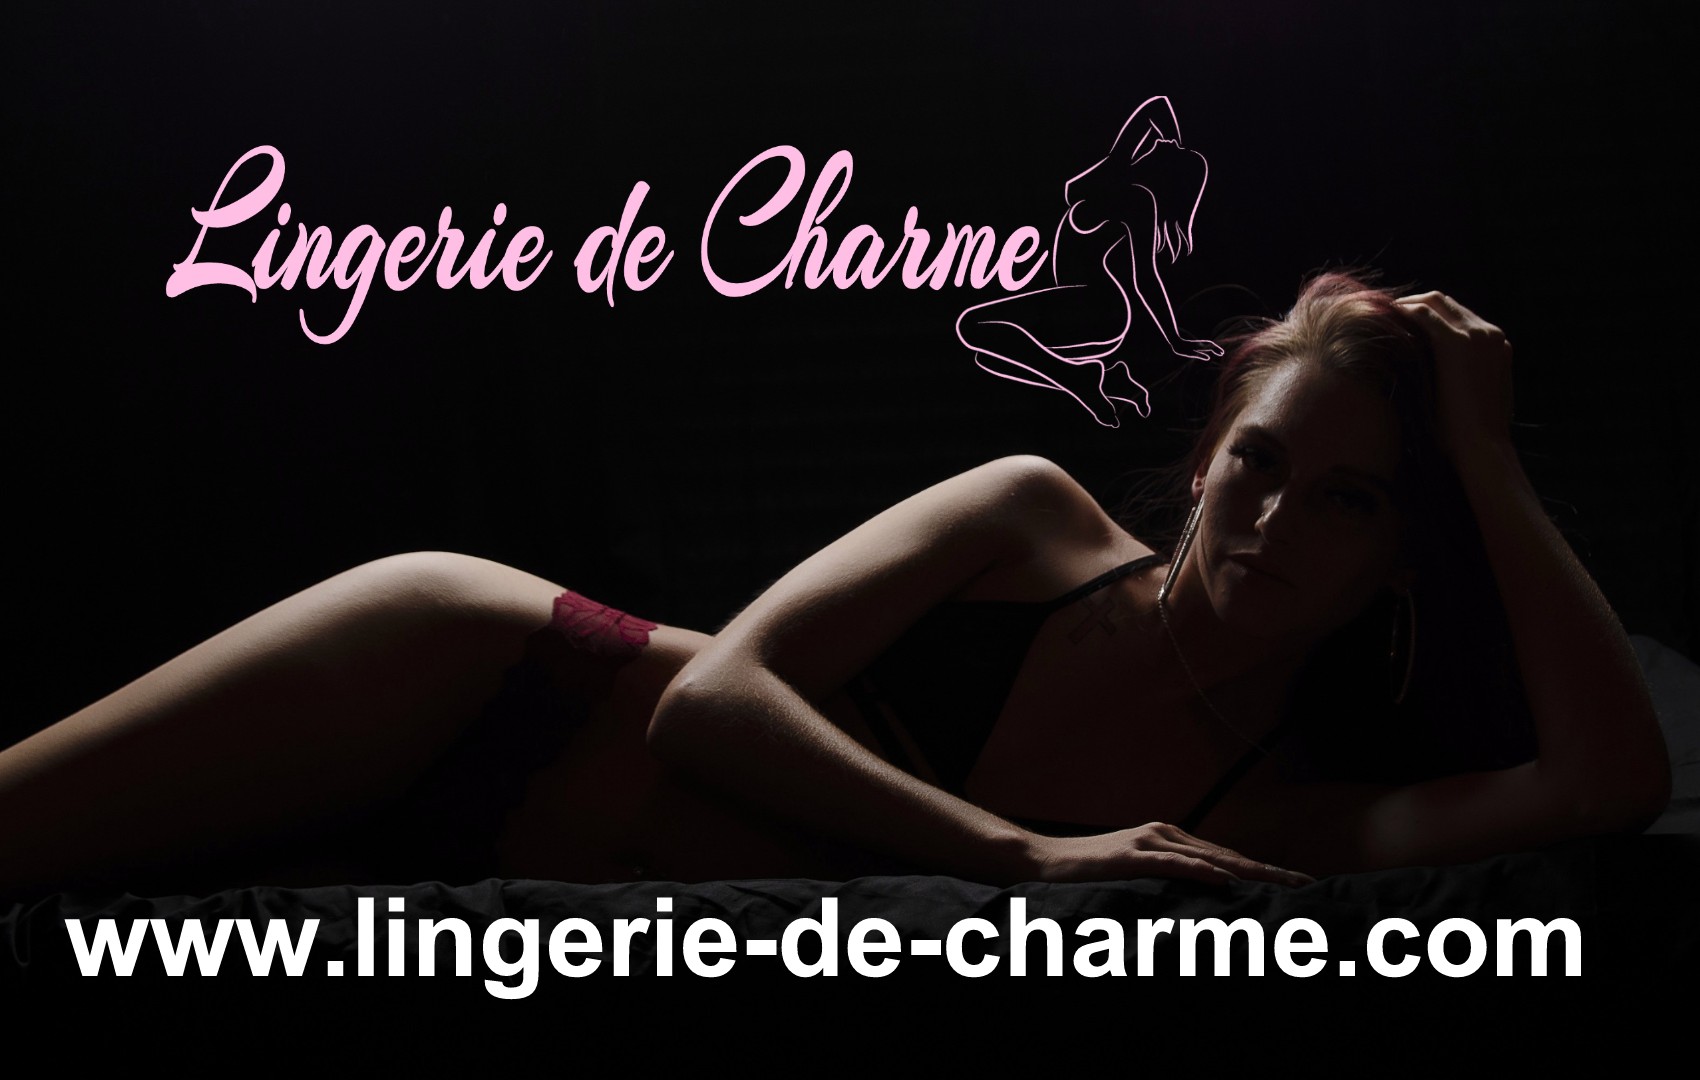 LINGERIE DE CHARME CRITEUIL-LA-MAGDELEINE 16 - LINGERIE SEXY CRITEUIL-LA-MAGDELEINE 16